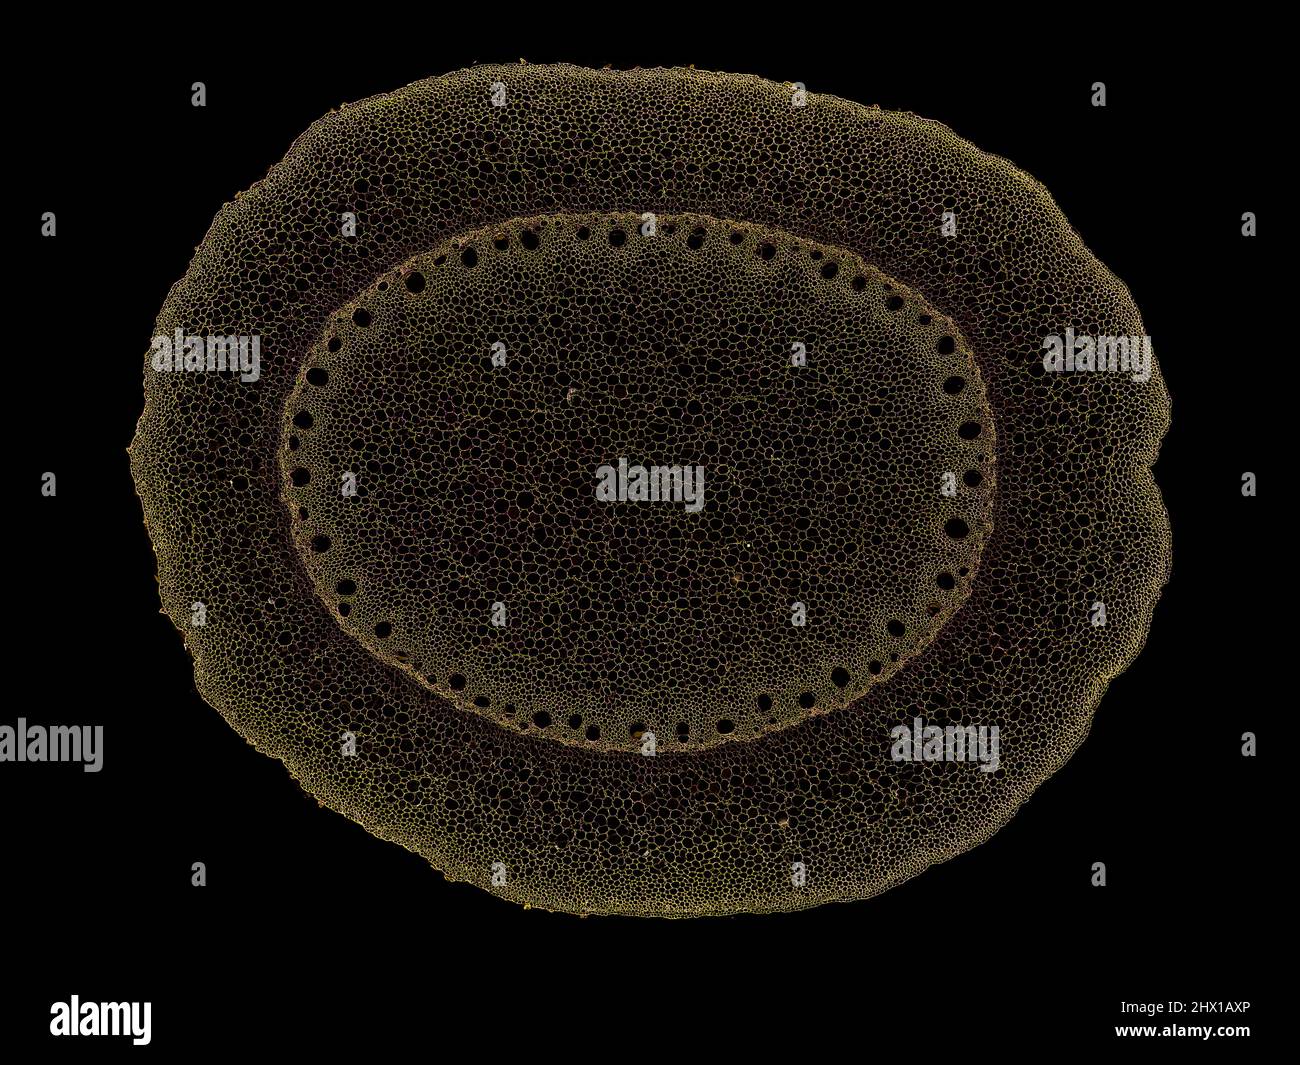 Schnittschnitt eines Pflanzenstamms unter dem Mikroskop – mikroskopische Ansicht von Pflanzenzellen für die botanische Ausbildung – hohe Qualität Stockfoto